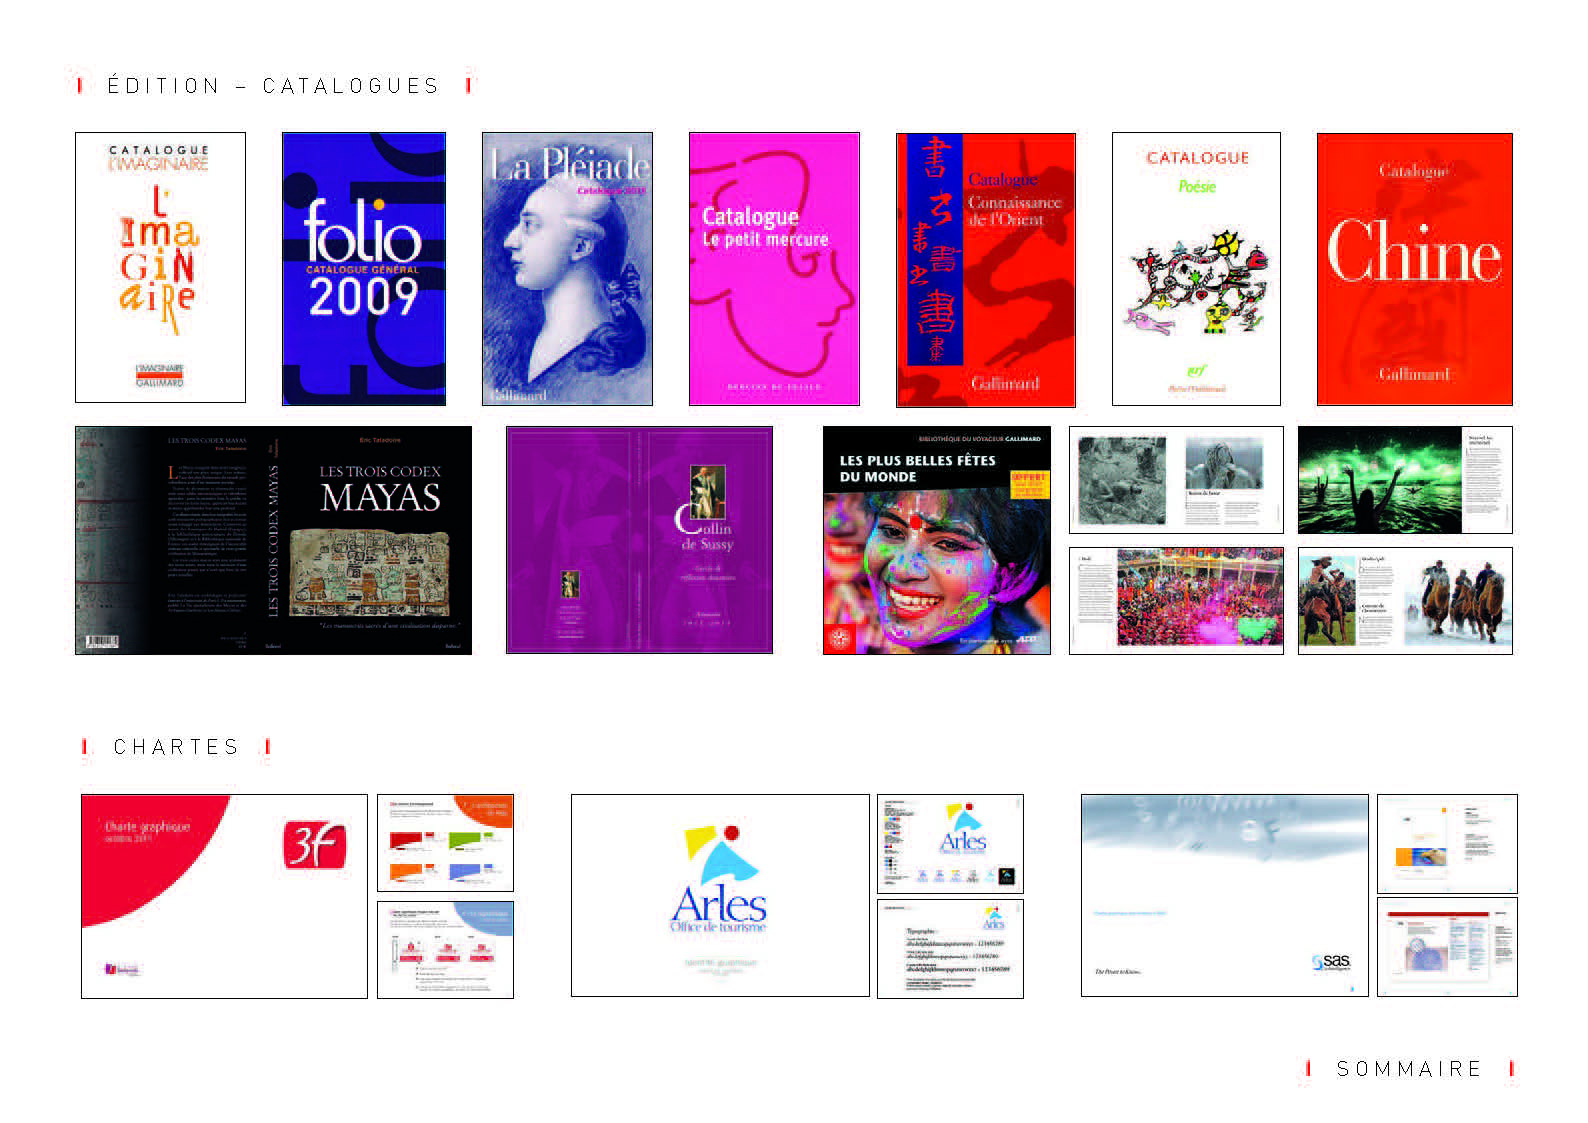 E-book Edition catalogues